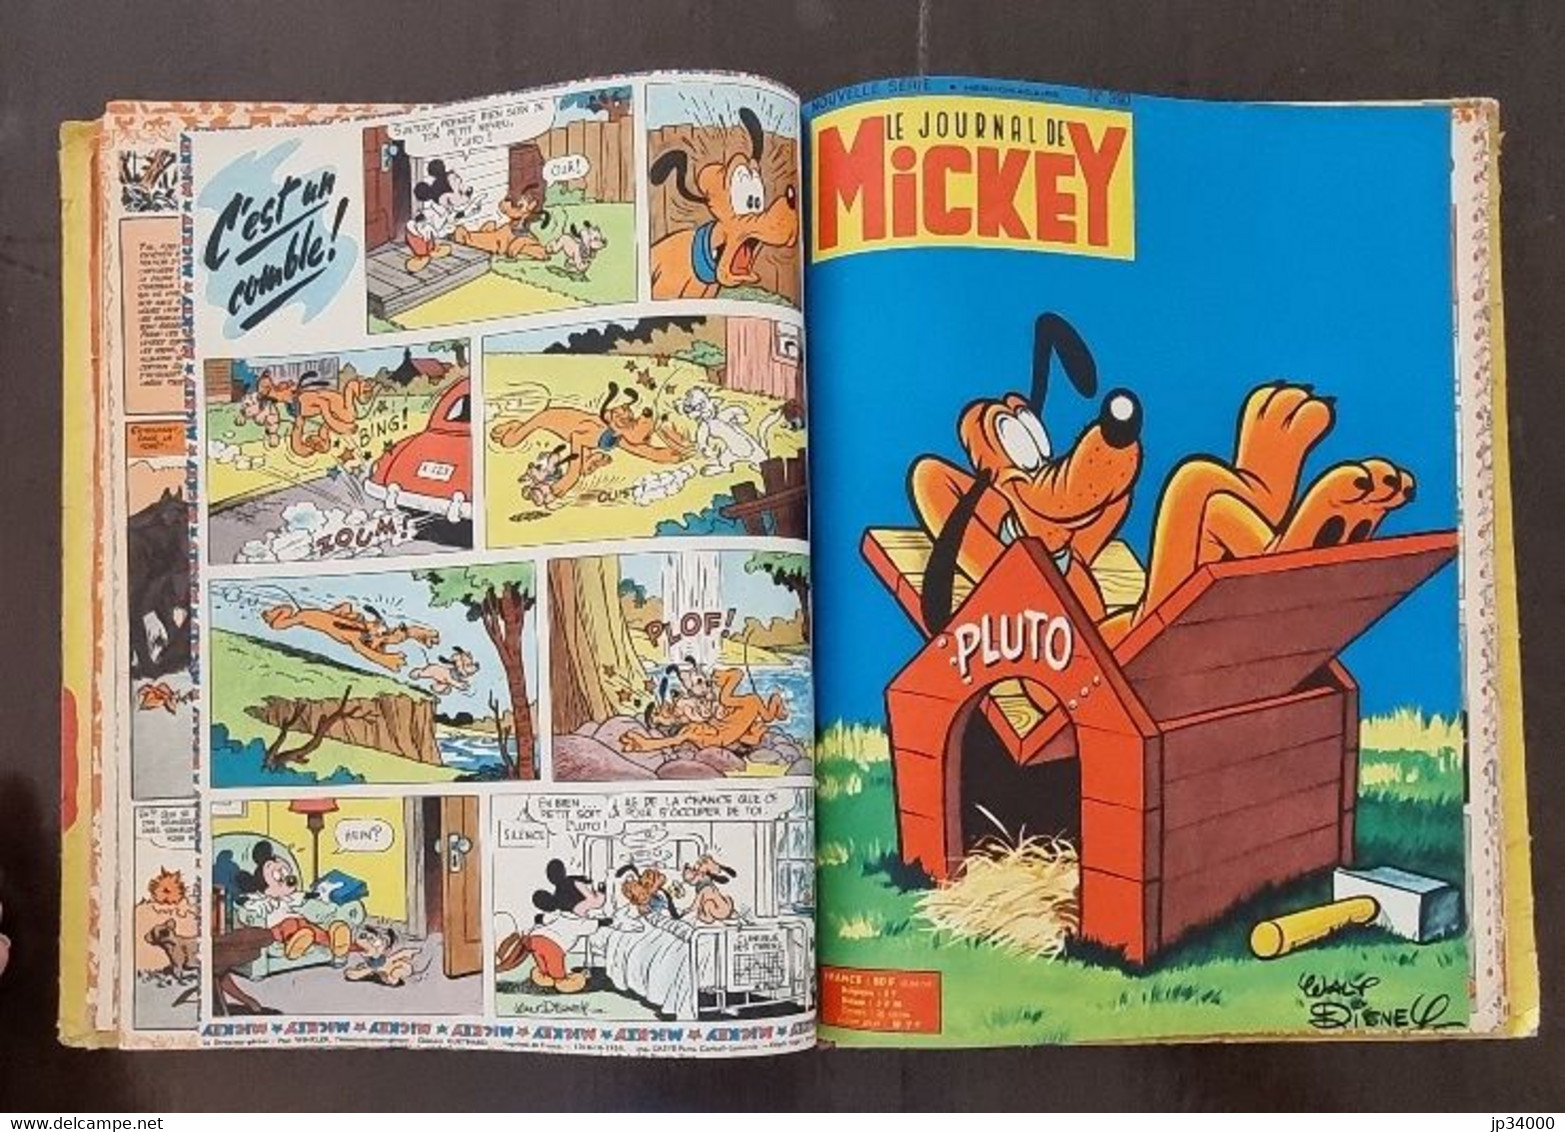 JOURNAL DE MICKEY album N°17 (numéros 378 à 395) publié en 1959 (reliure éditeur)